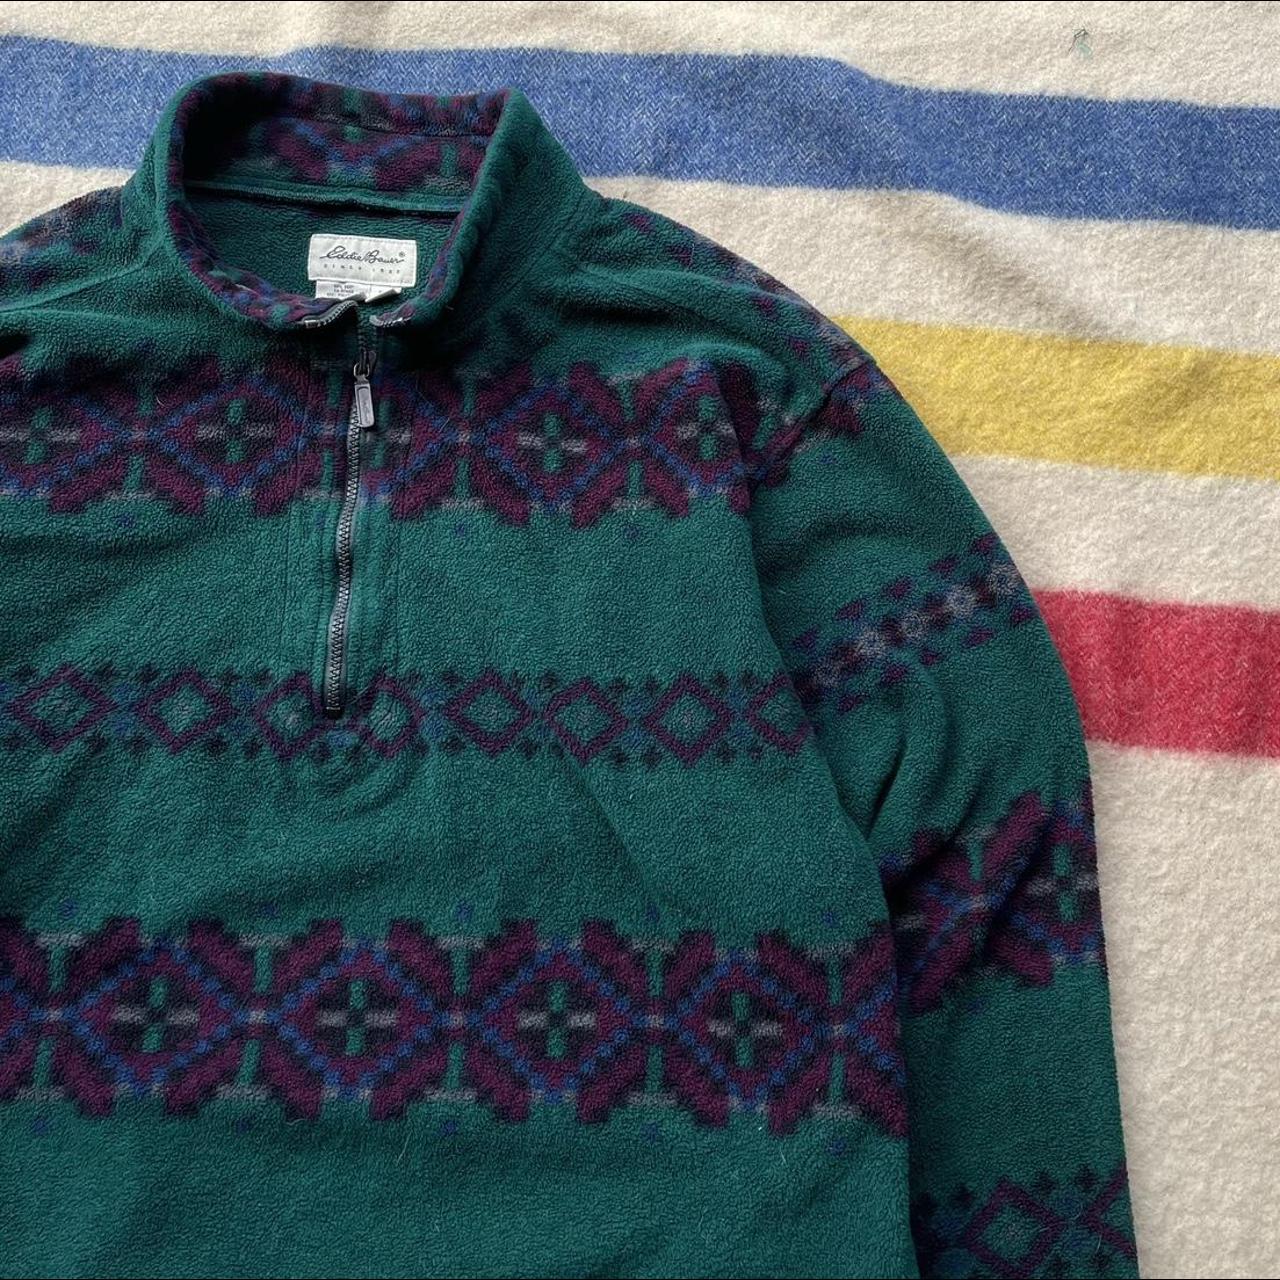 Vintage 90s Eddie Bauer Aztec Pullover Fleece Made... - Depop